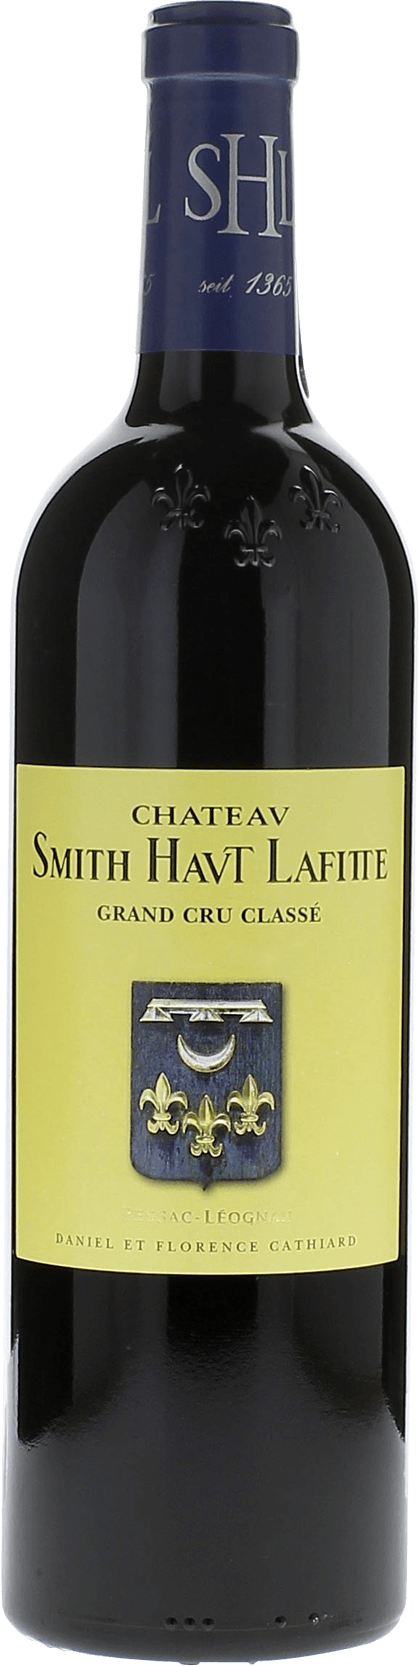 Smith haut lafitte 2015 Grand Cru Class Pessac-Lognan, Bordeaux rouge